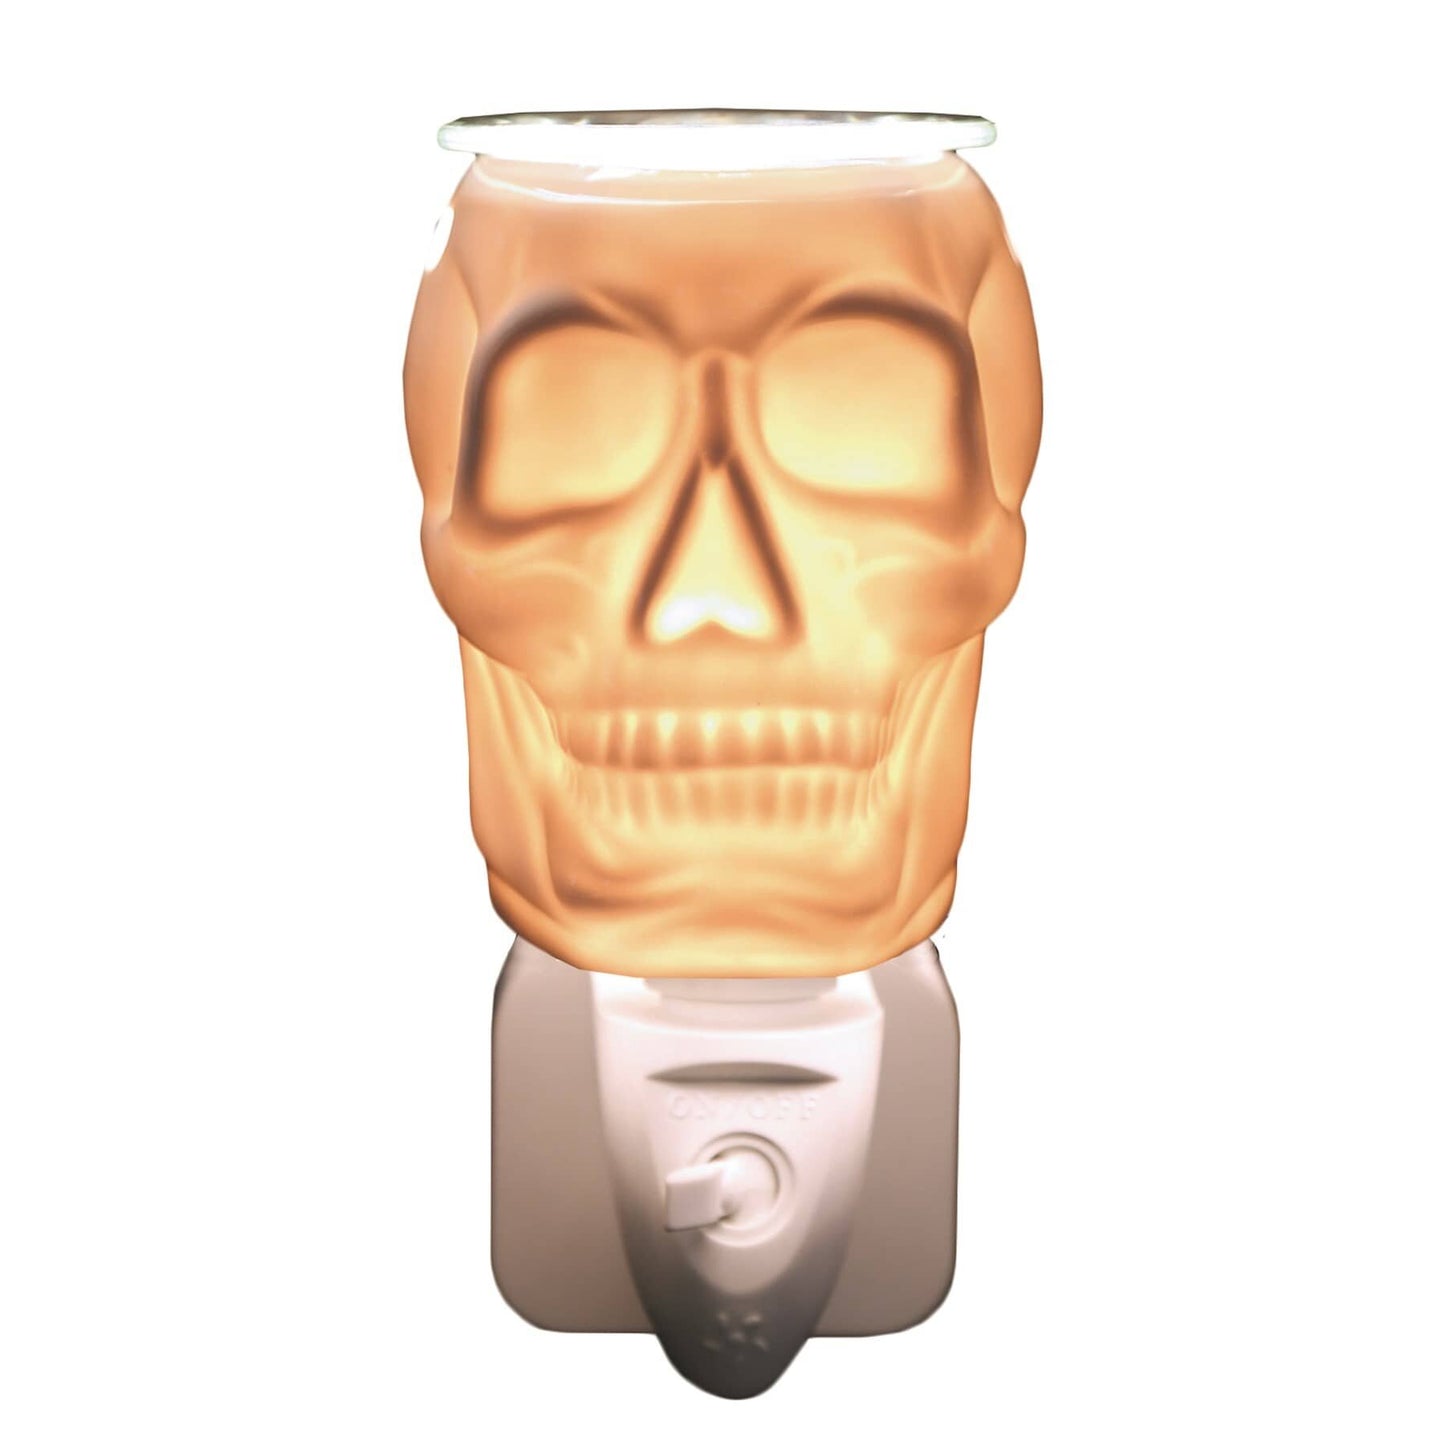 Wax Melt Burner Plug In - Ceramic Skull AR1571